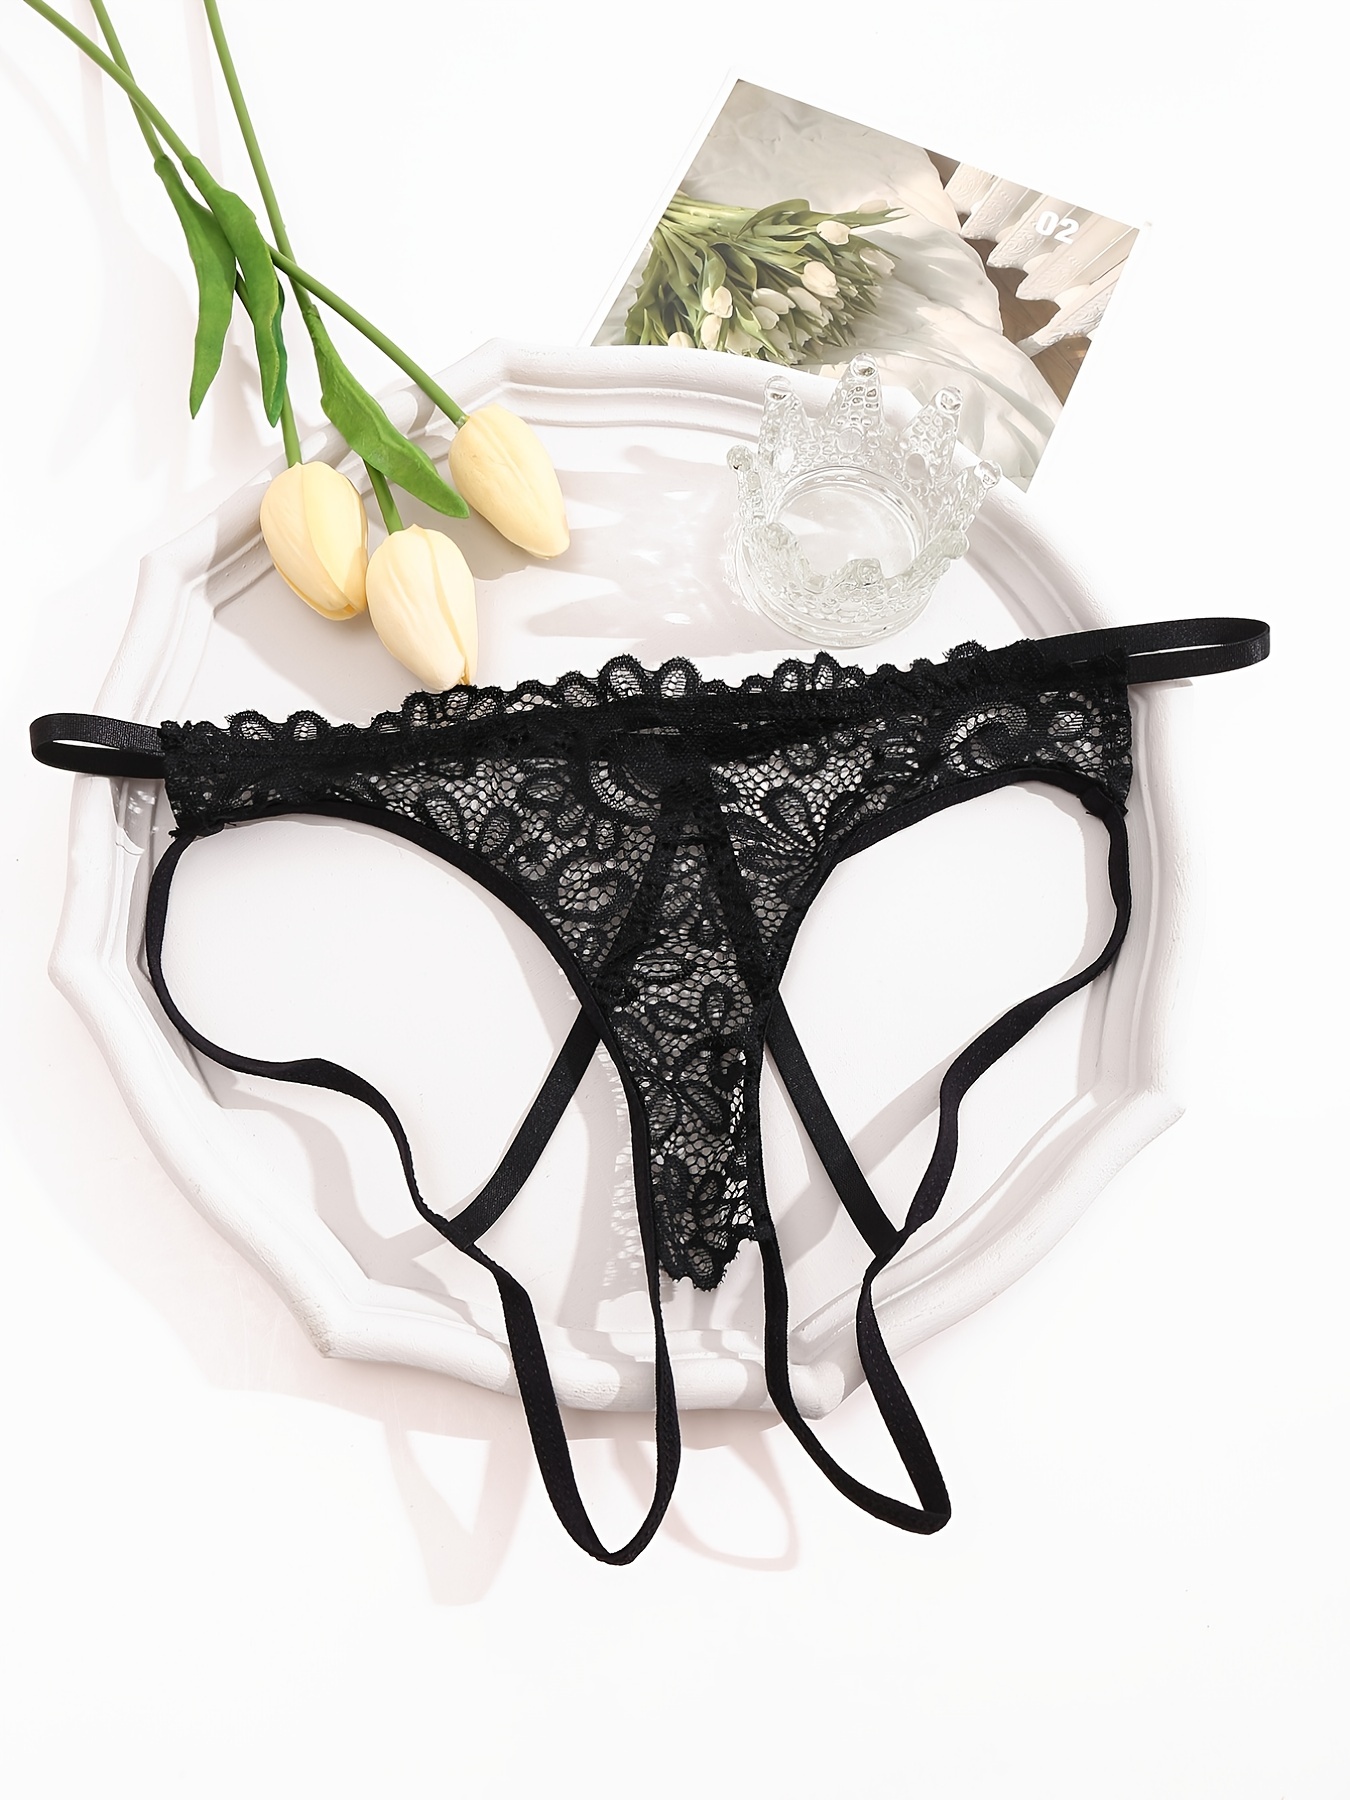 TANGNADE Women's Sexy Underpants Open Crotch Panties Low Waist